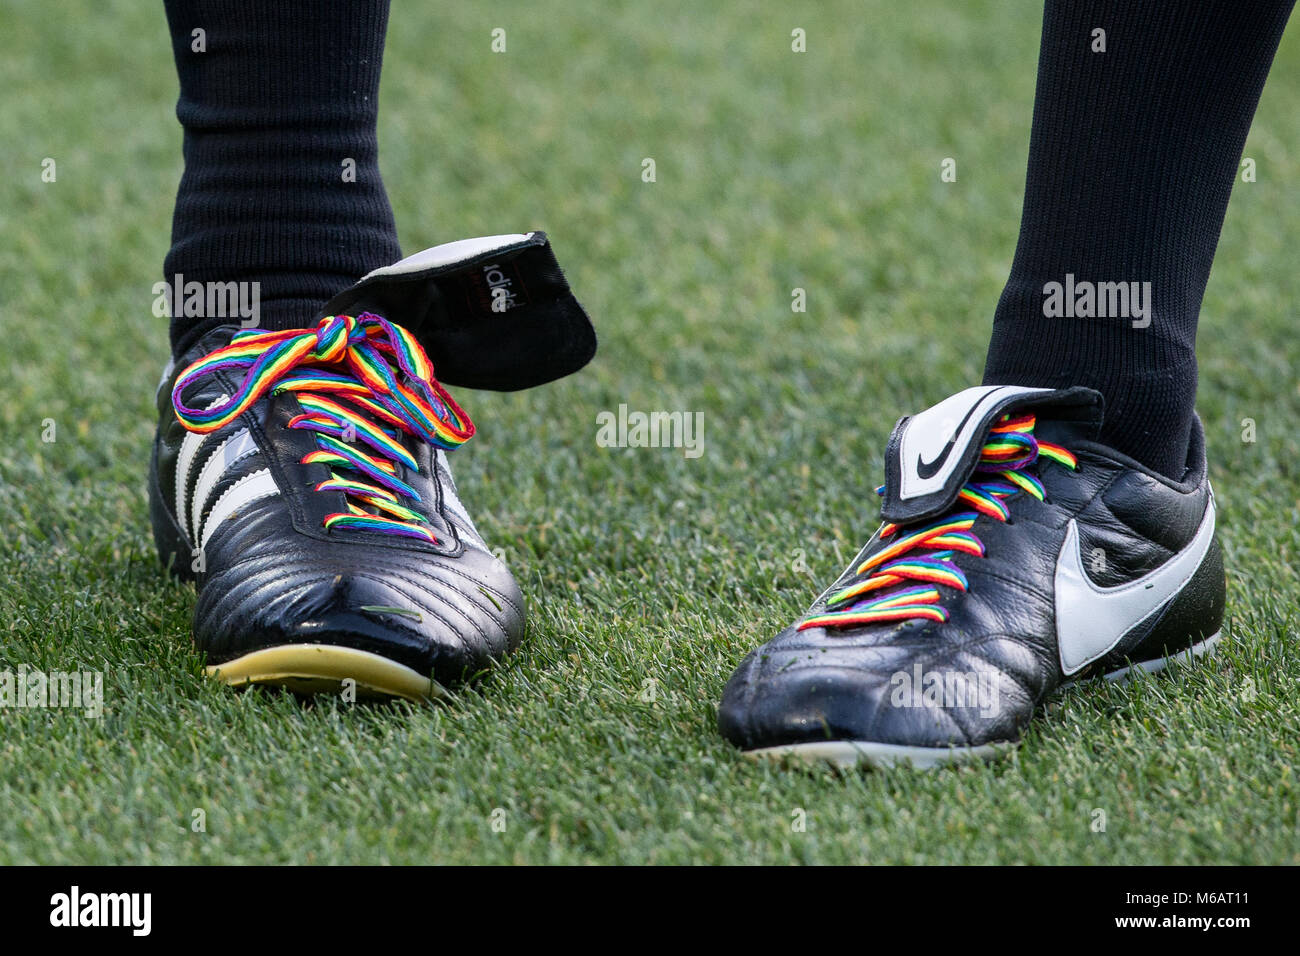 adidas rainbow football boots